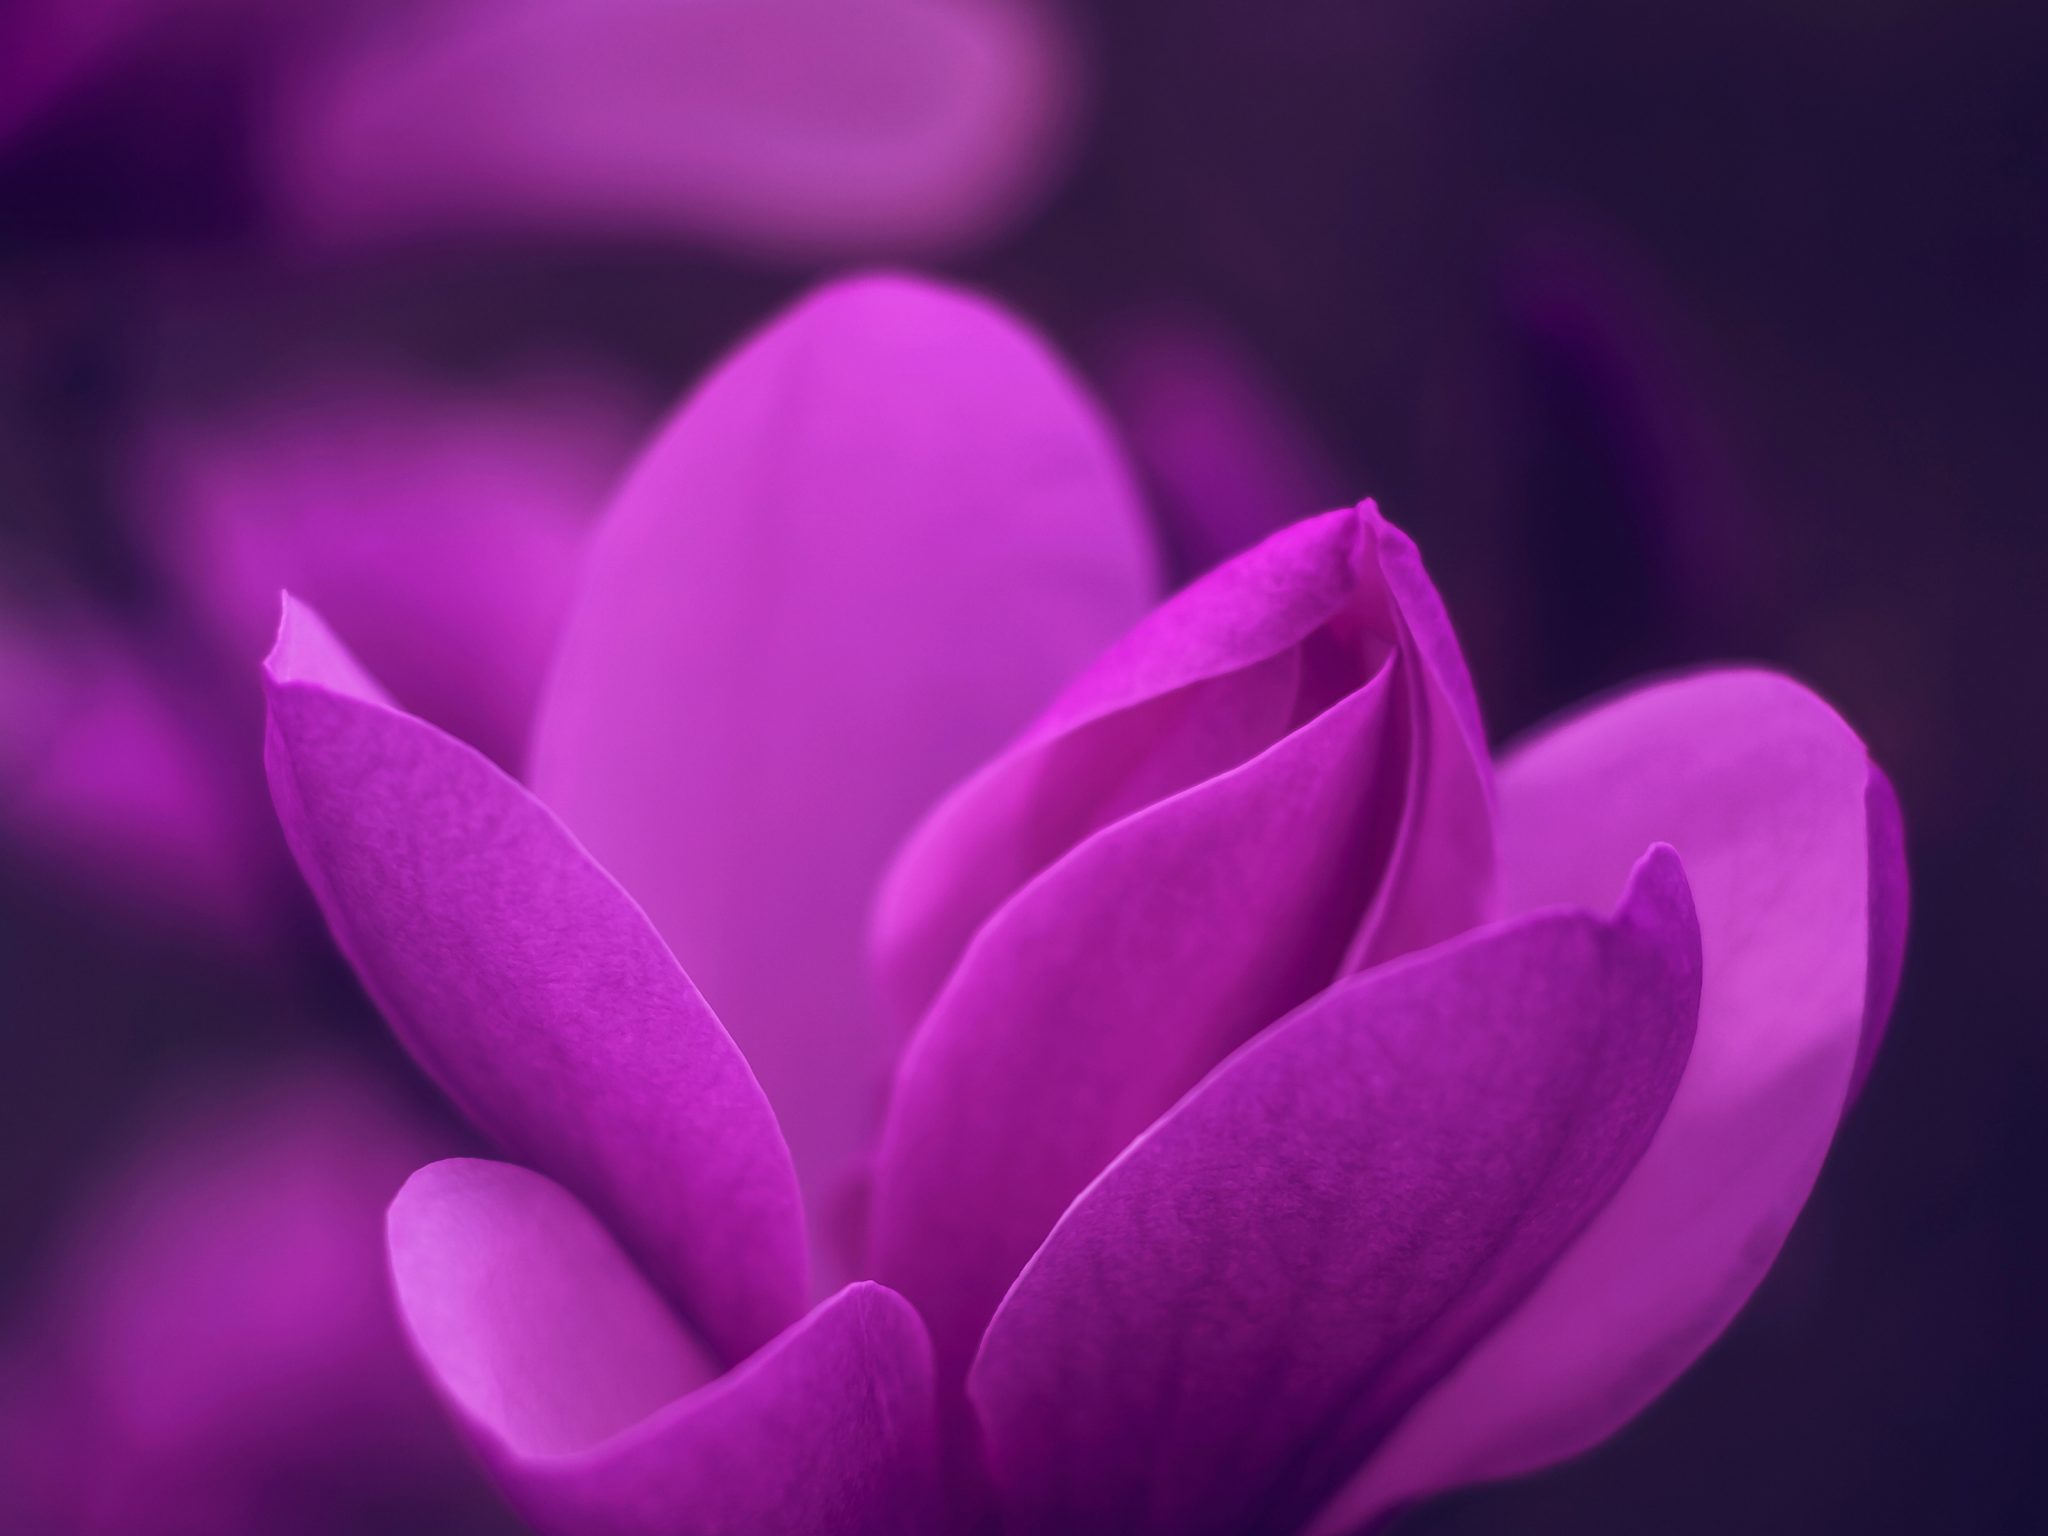 2048x1536 wallpaper Purple Bloom Blossom Petaled Flower iPad Wallpaper 2048x1536 pixels resolution